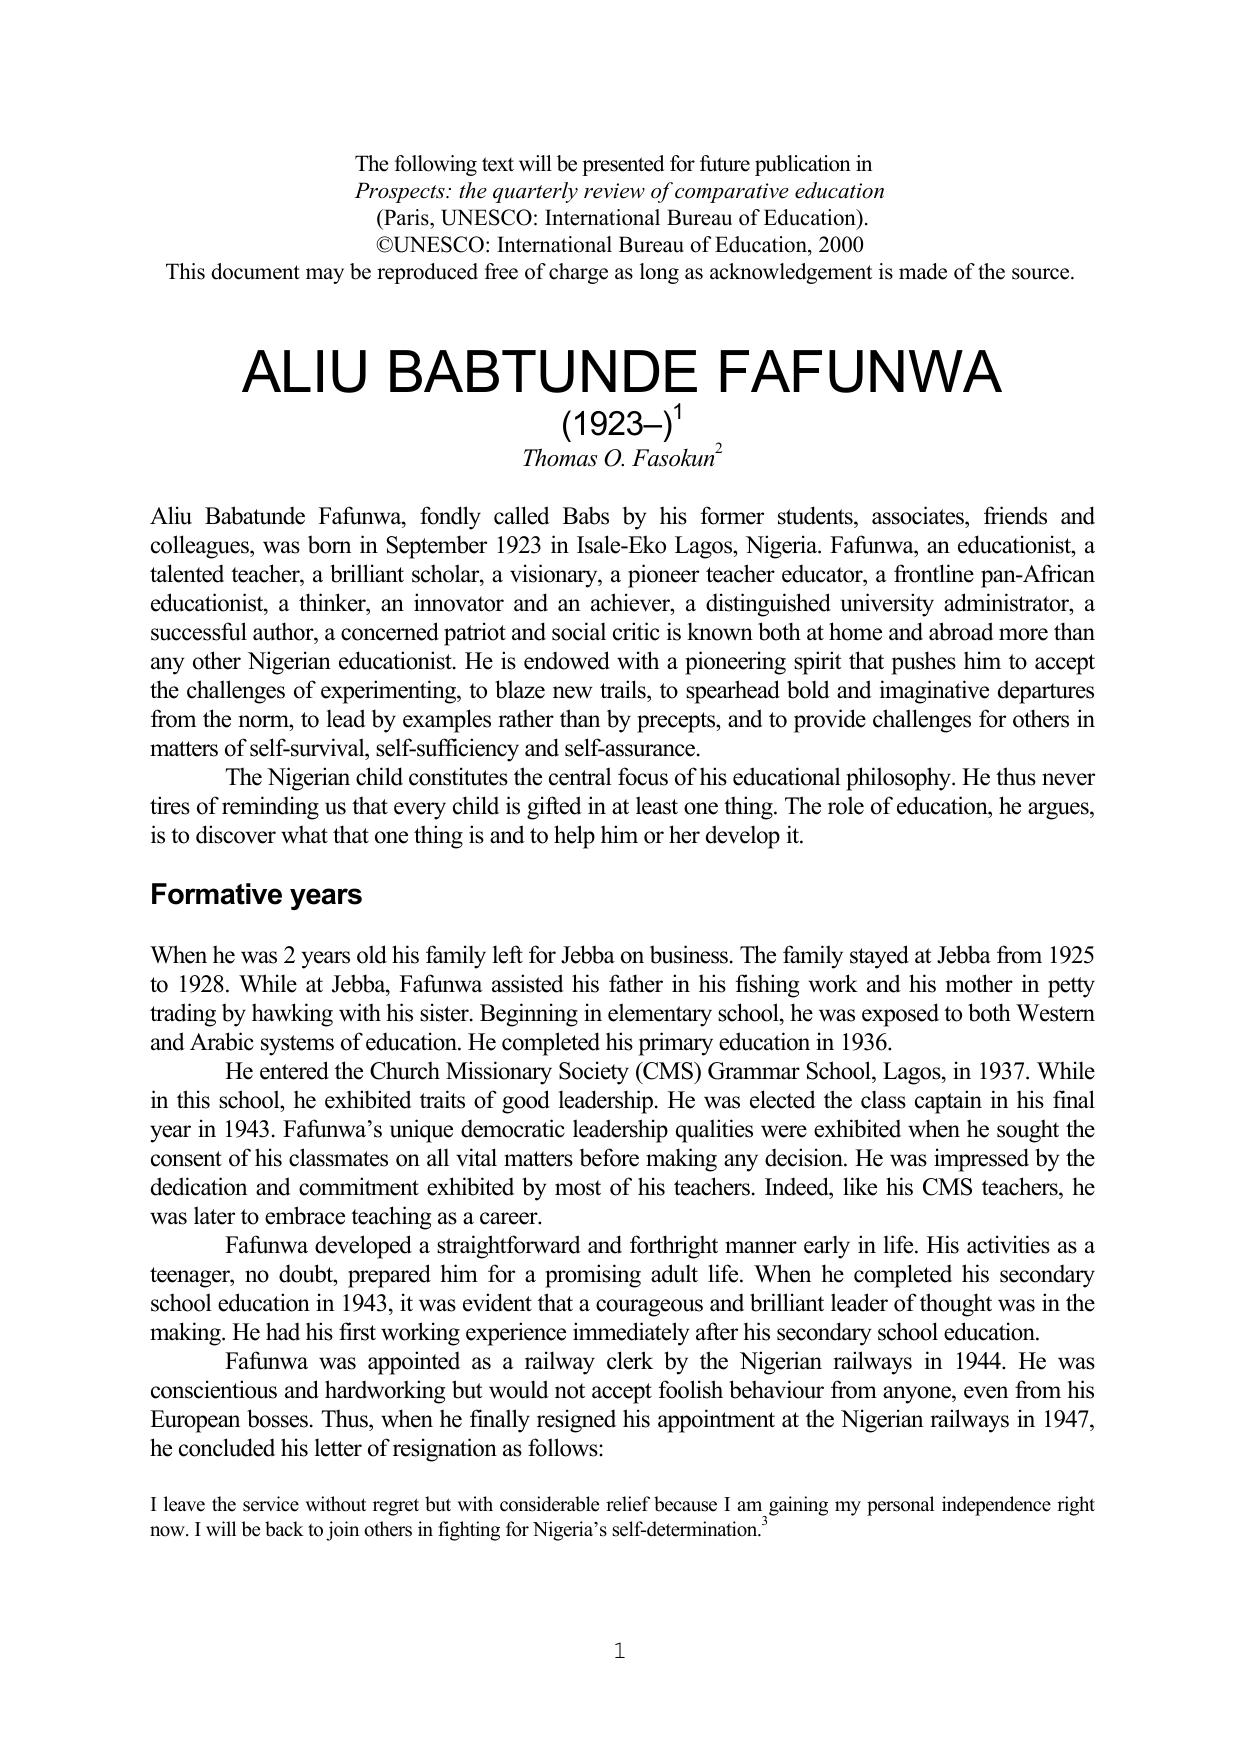 Aliu Babatunde Fafunwa